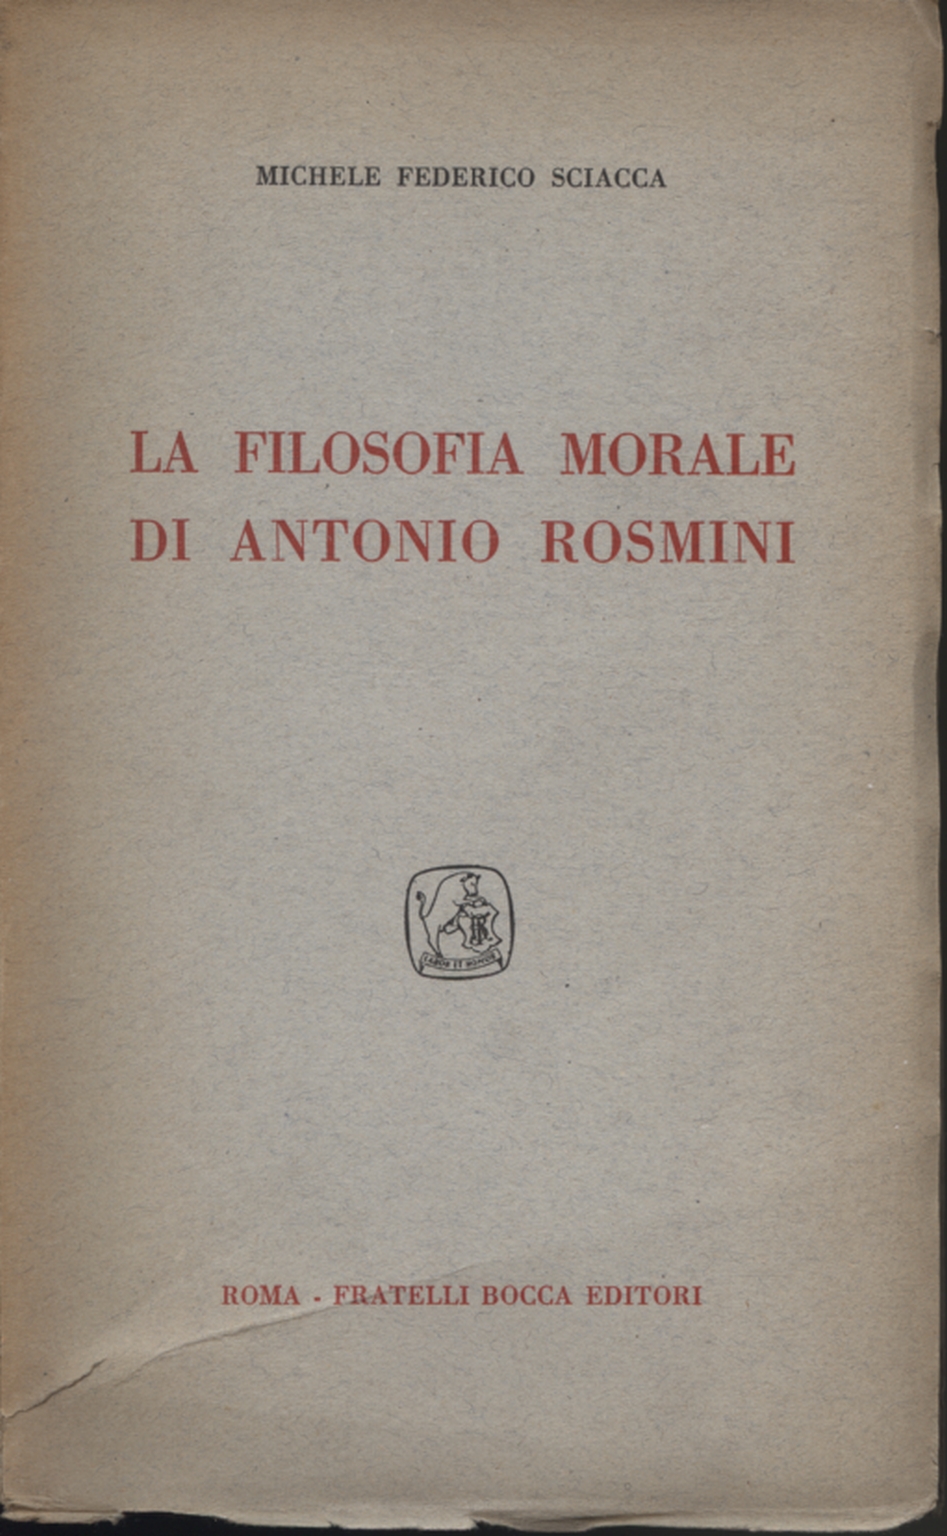 La Filosofia Morale di Antonio Rosmini, Michele Federico Sciacca